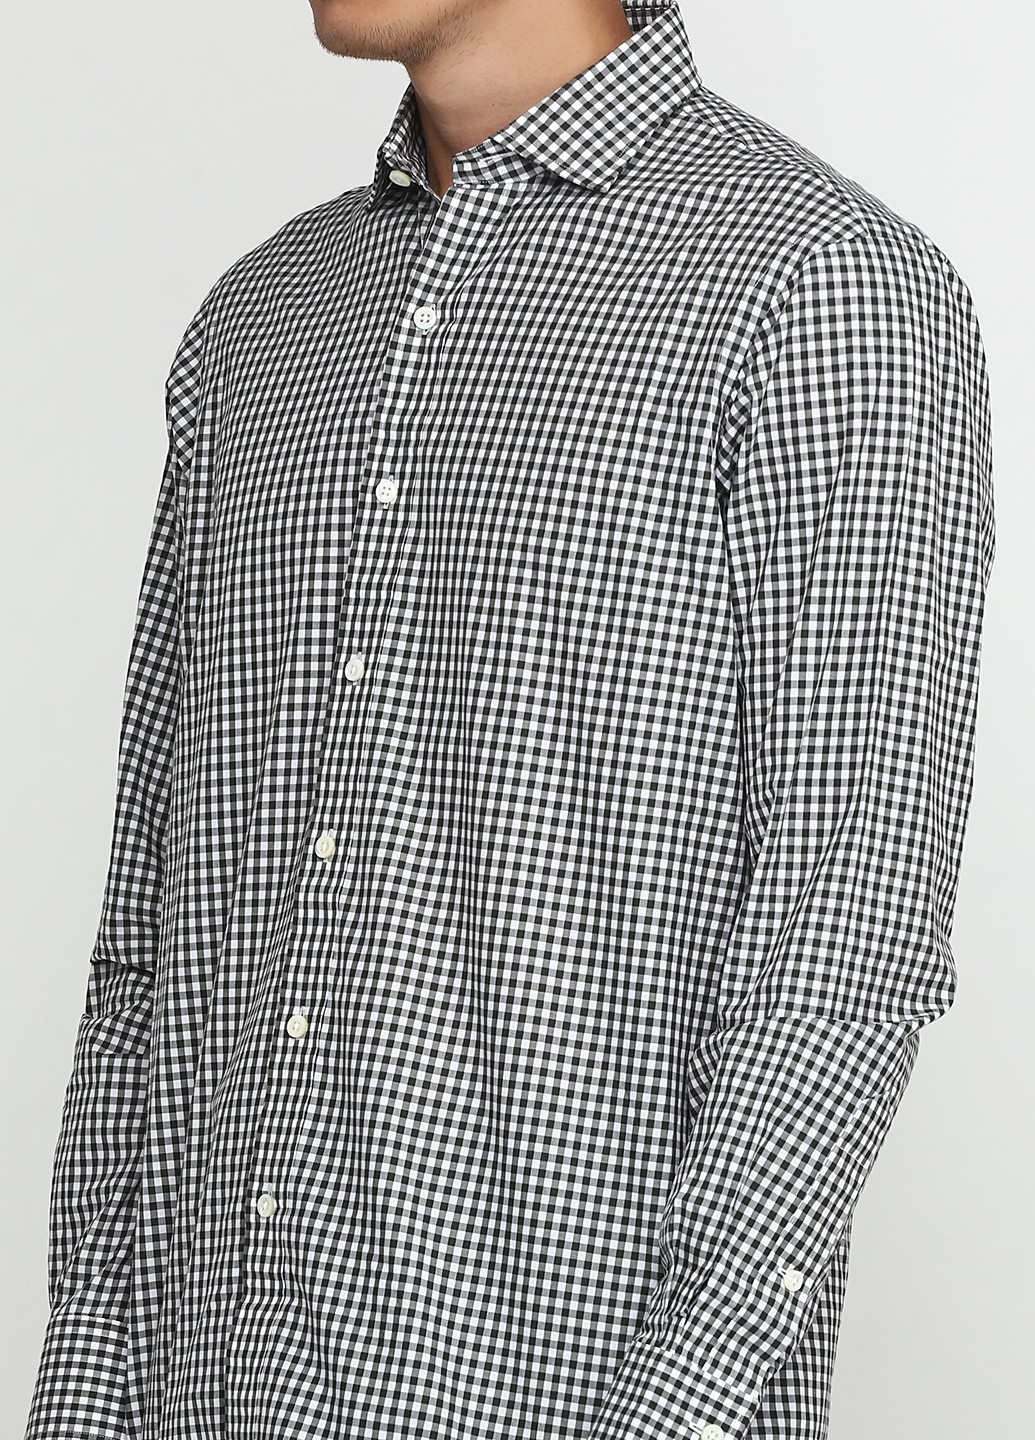 Грифельно-серая кэжуал рубашка в клетку Ralph Lauren с длинным рукавом